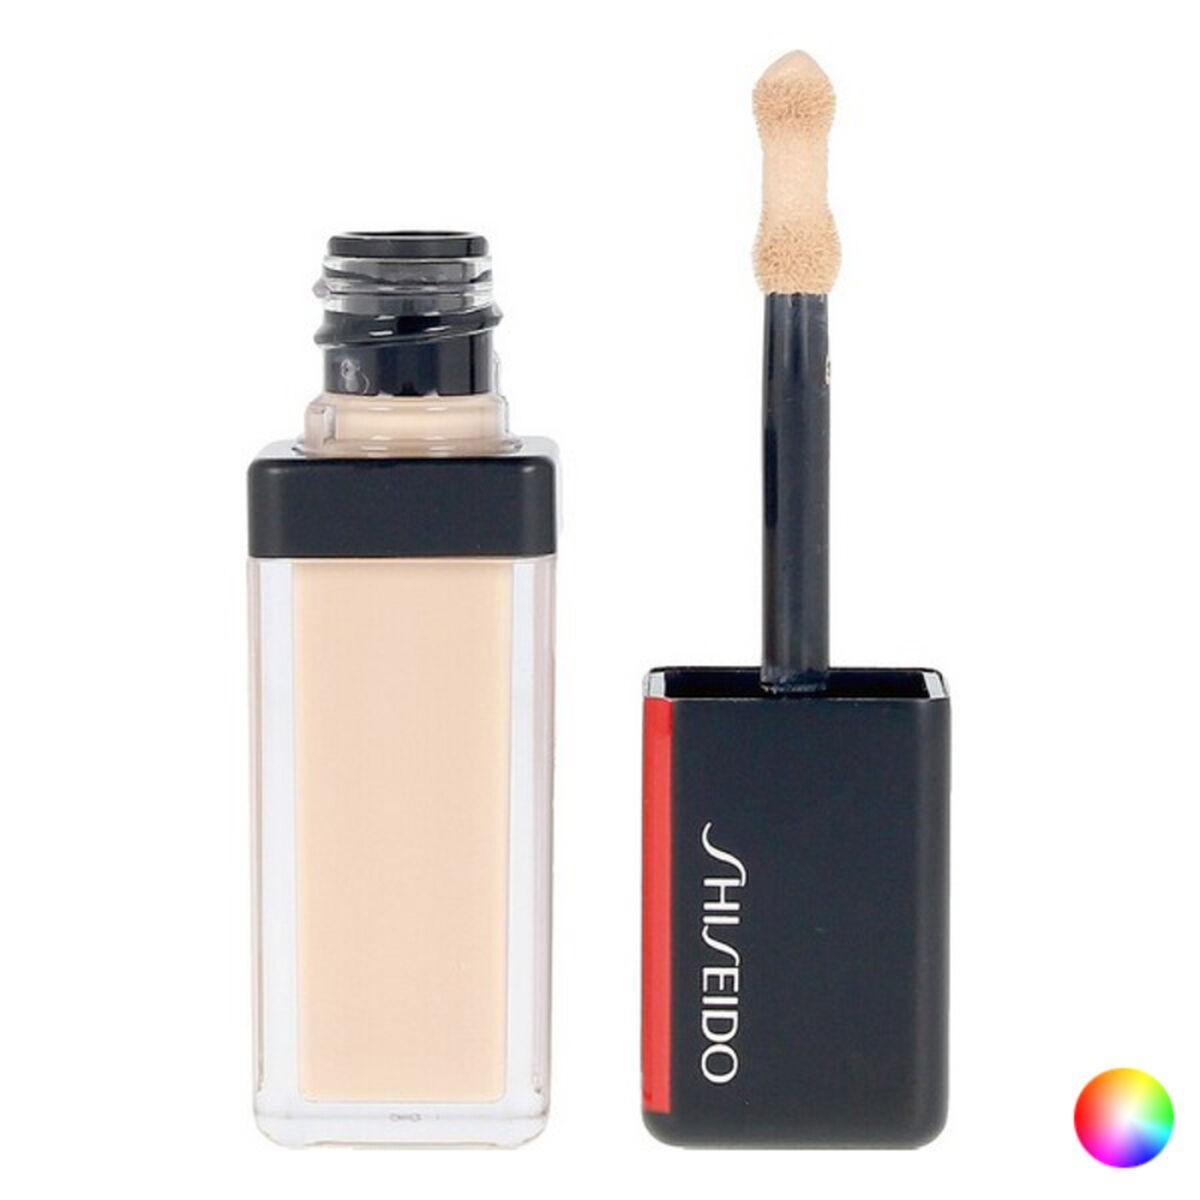 Se Dækcreme til Ansigtet Synchro Skin Shiseido 201 5,8 ml hos Boligcenter.dk